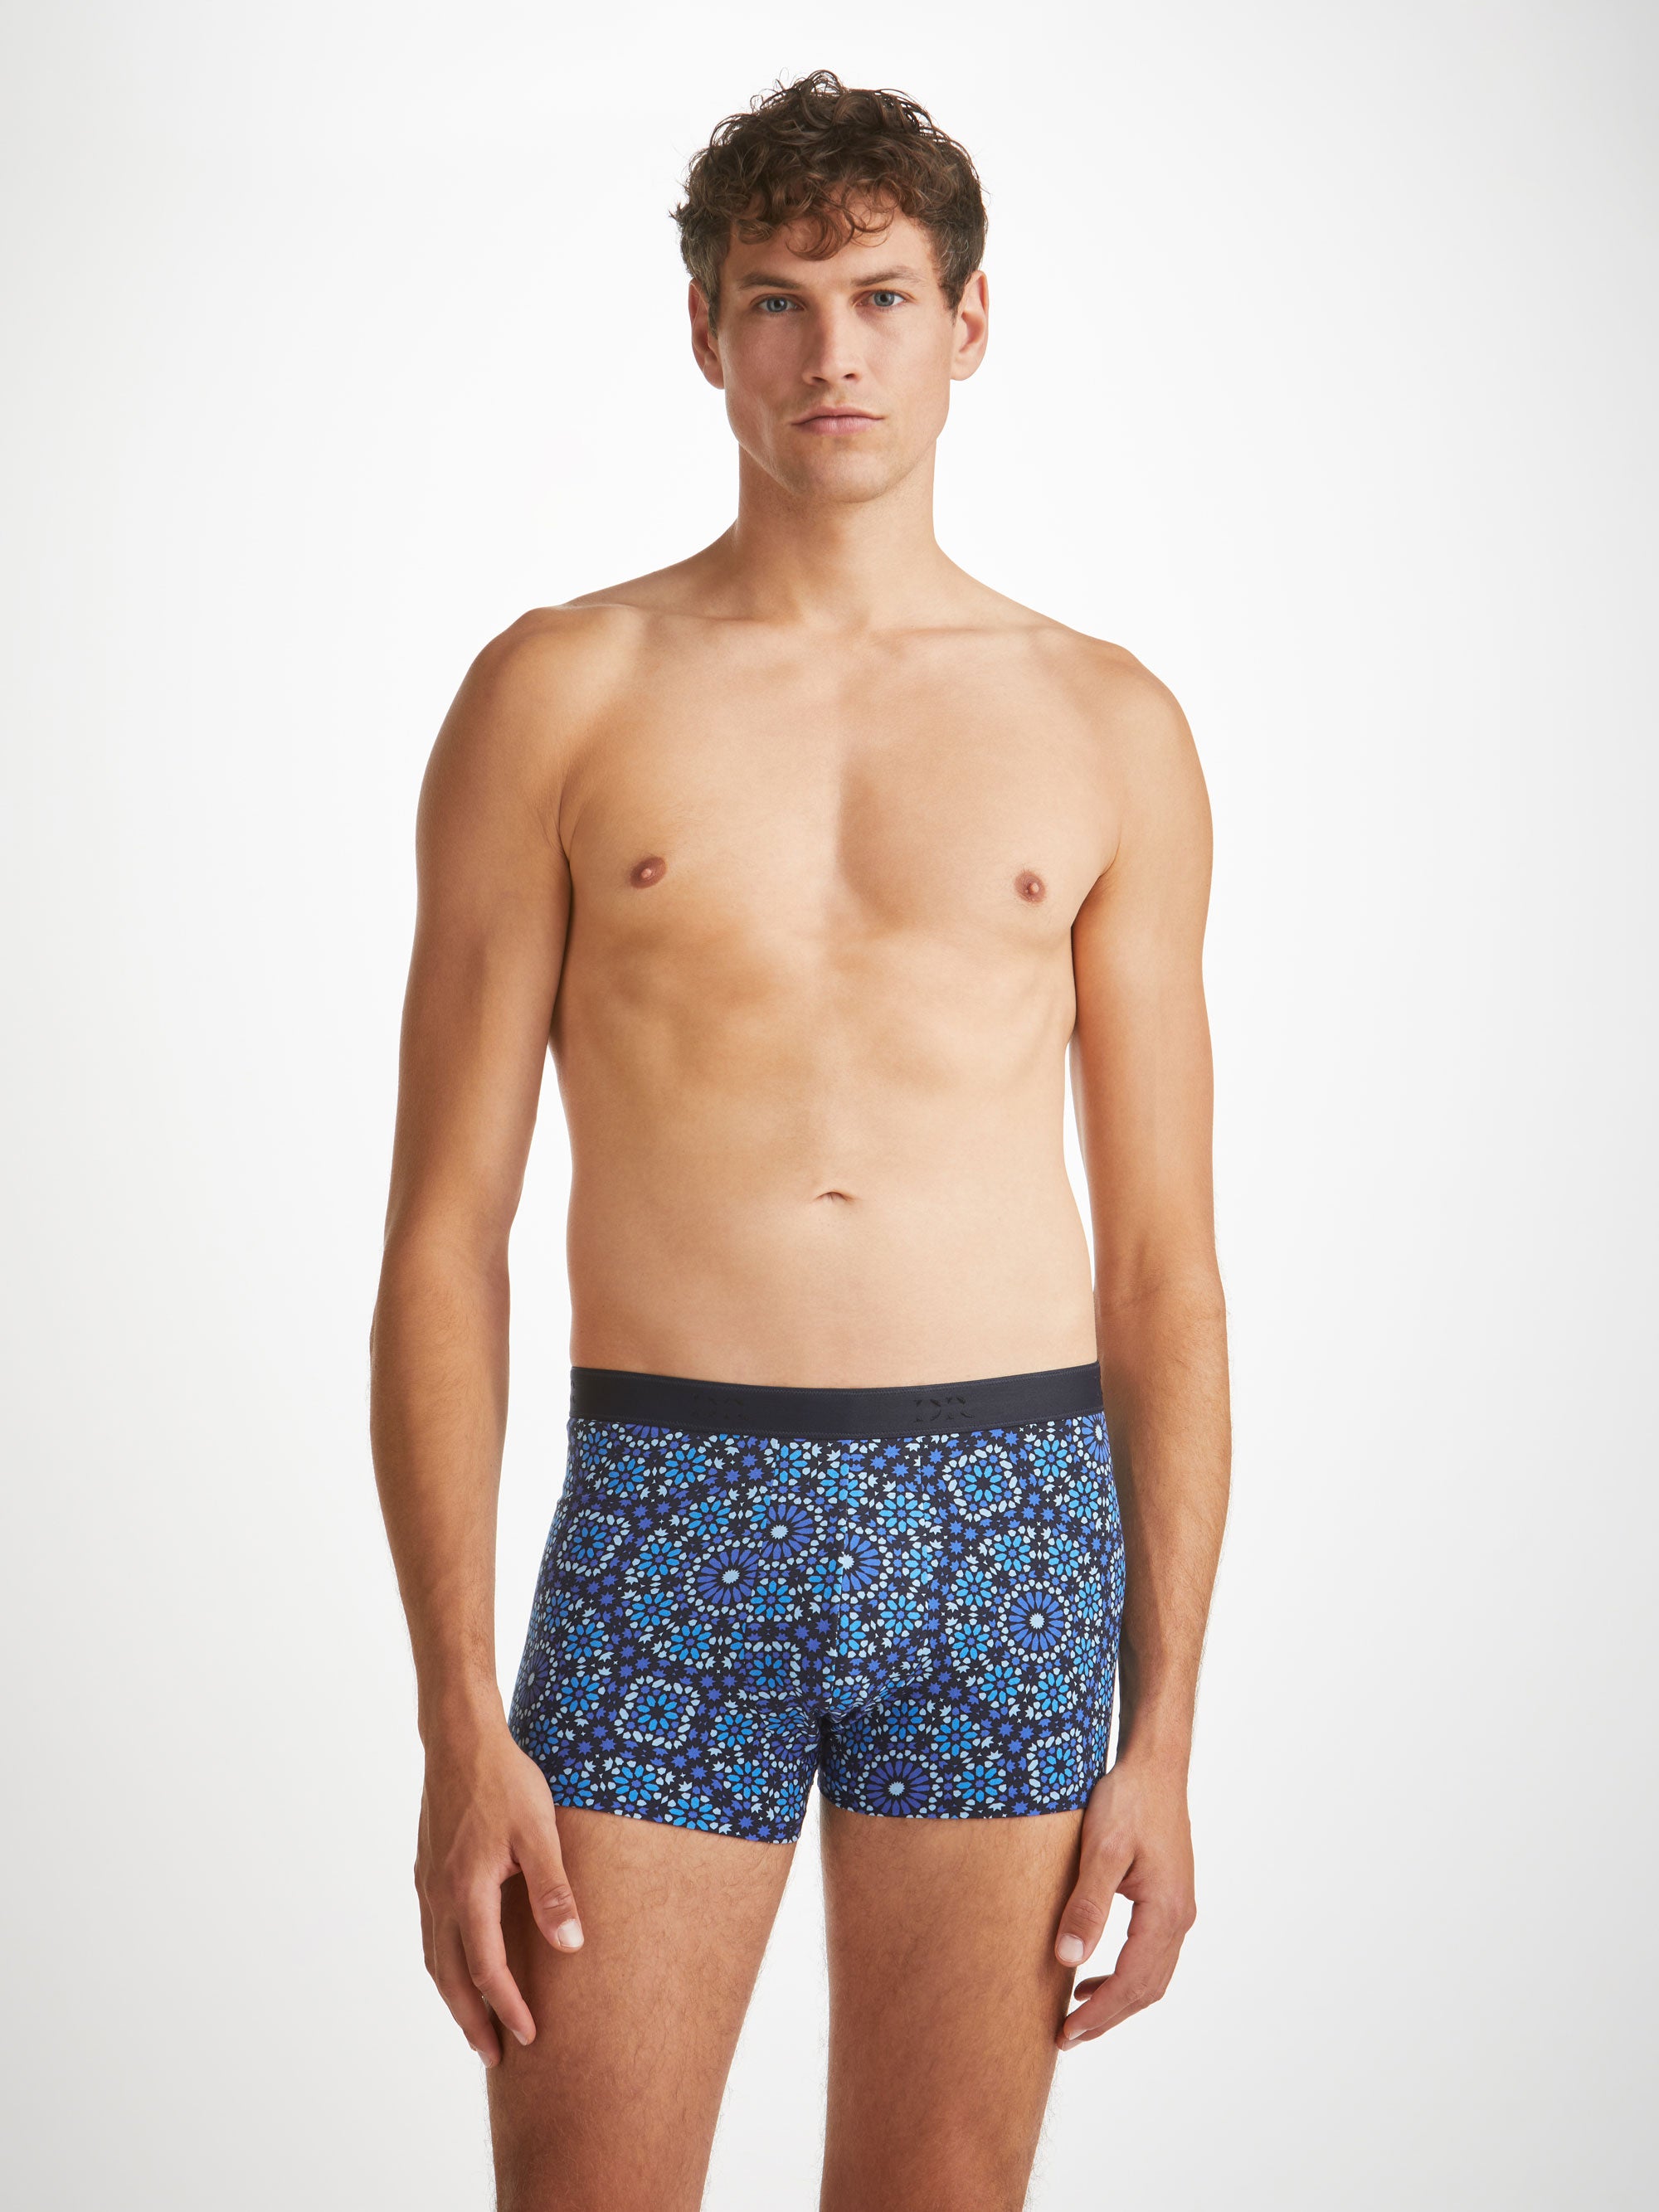 PUMP! Designer Fashion Men's Underwear - Briefs, Jocks, Boxer Briefs from  Topdrawers Underwear for Men